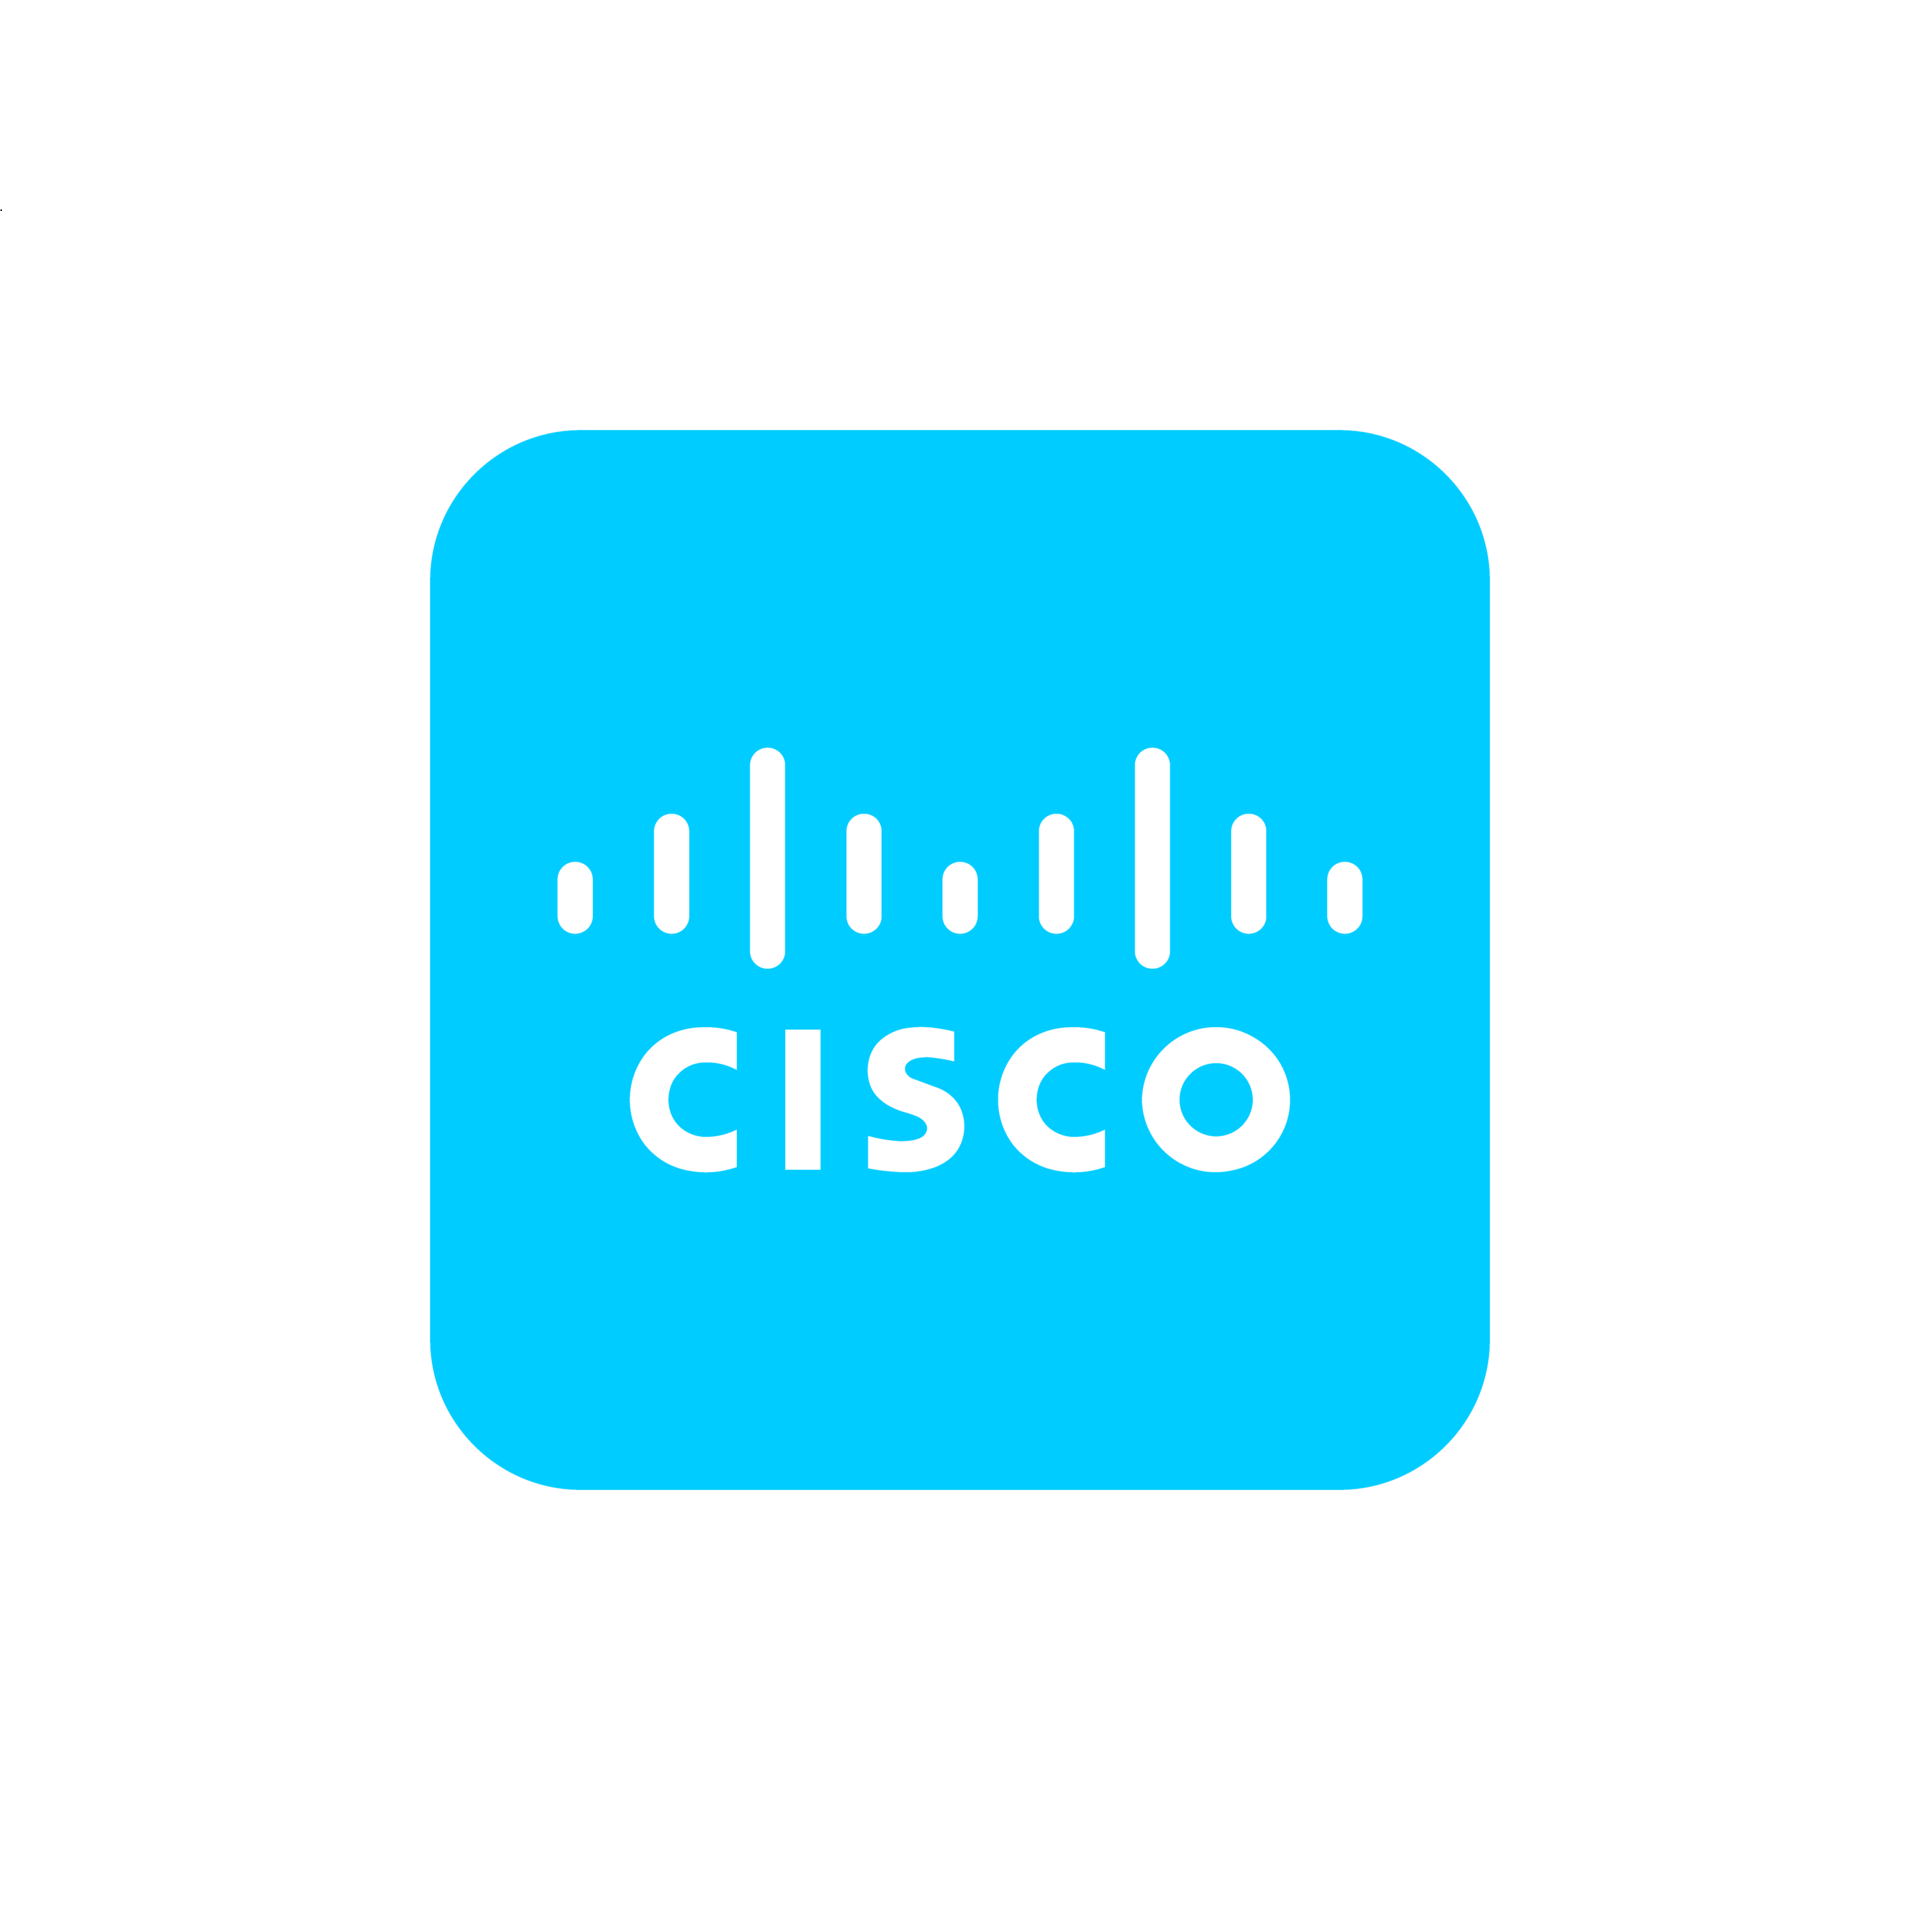 cisco-logo-transparent-free-png